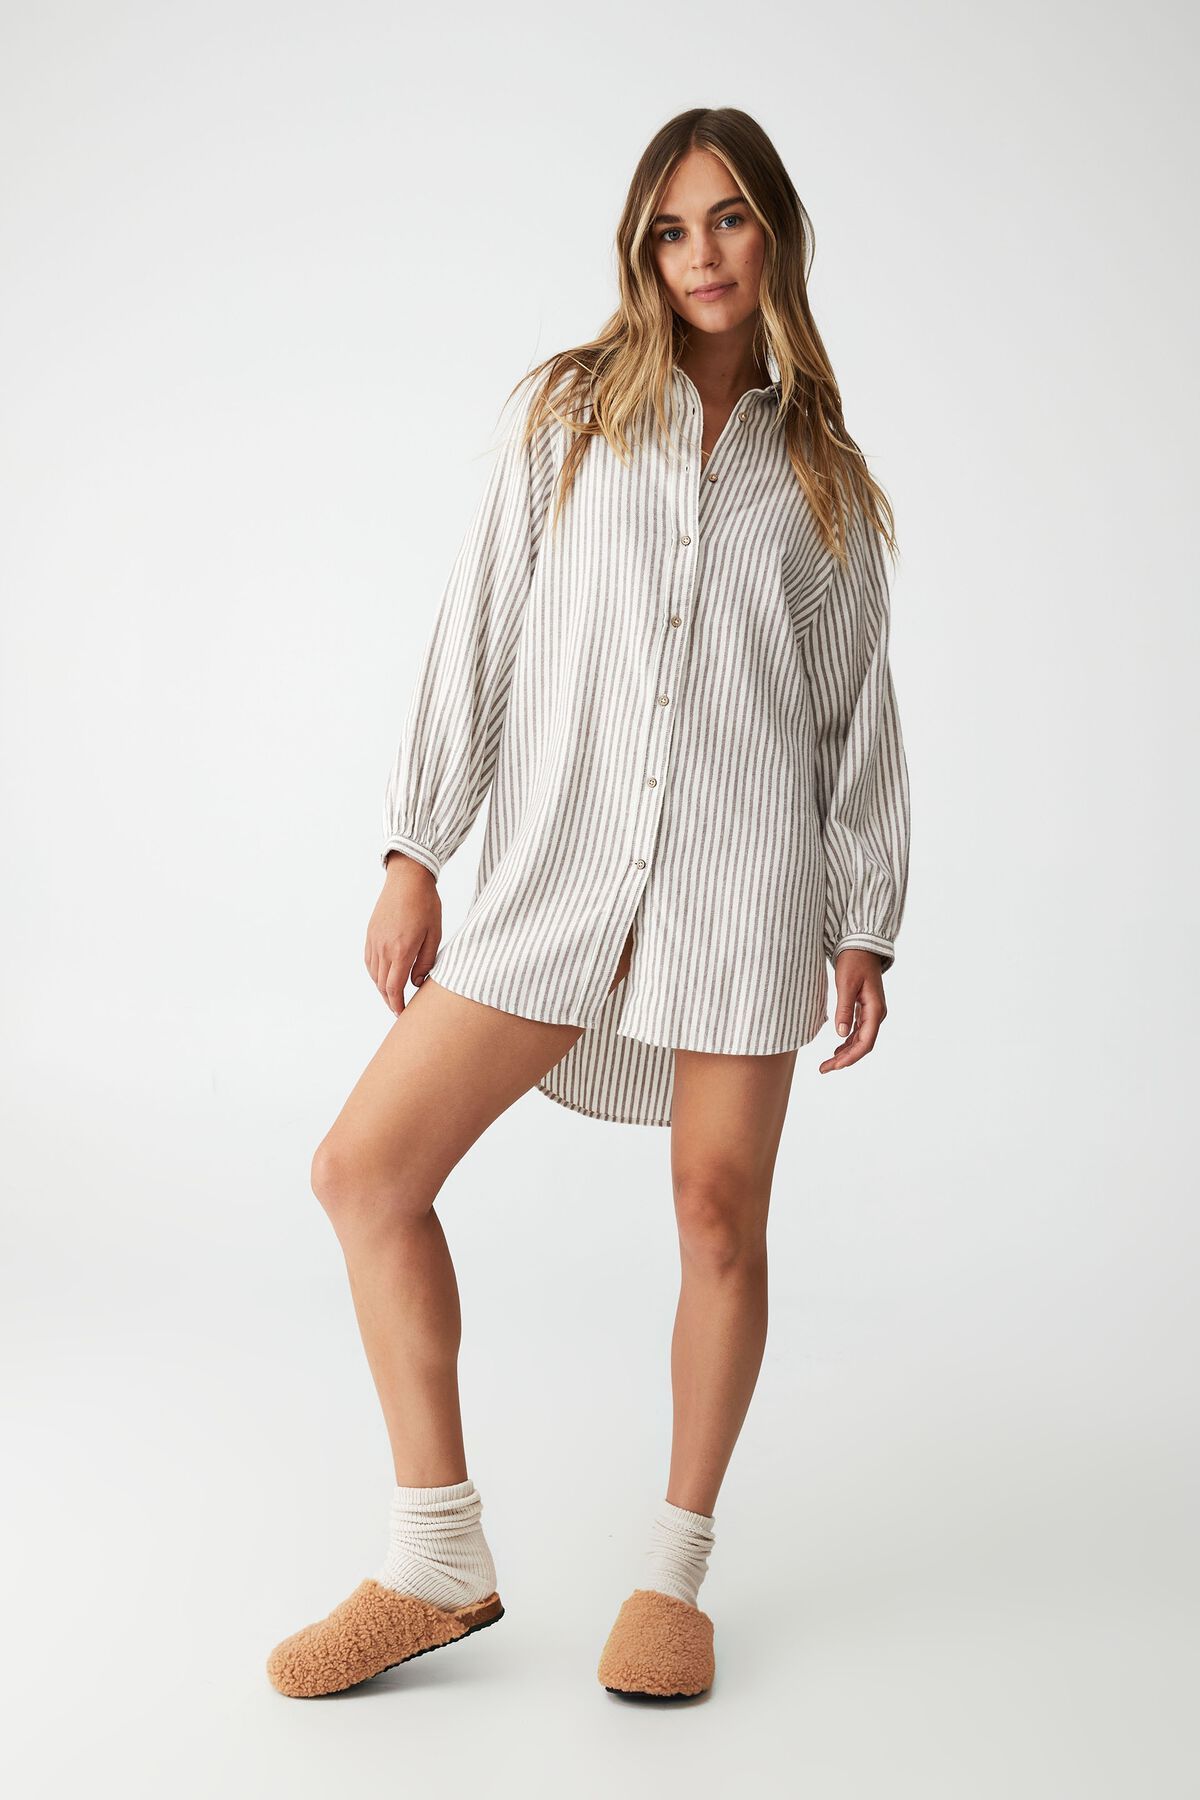 Warm Flannel Sleep Shirt Nightie | Cotton On (ANZ)